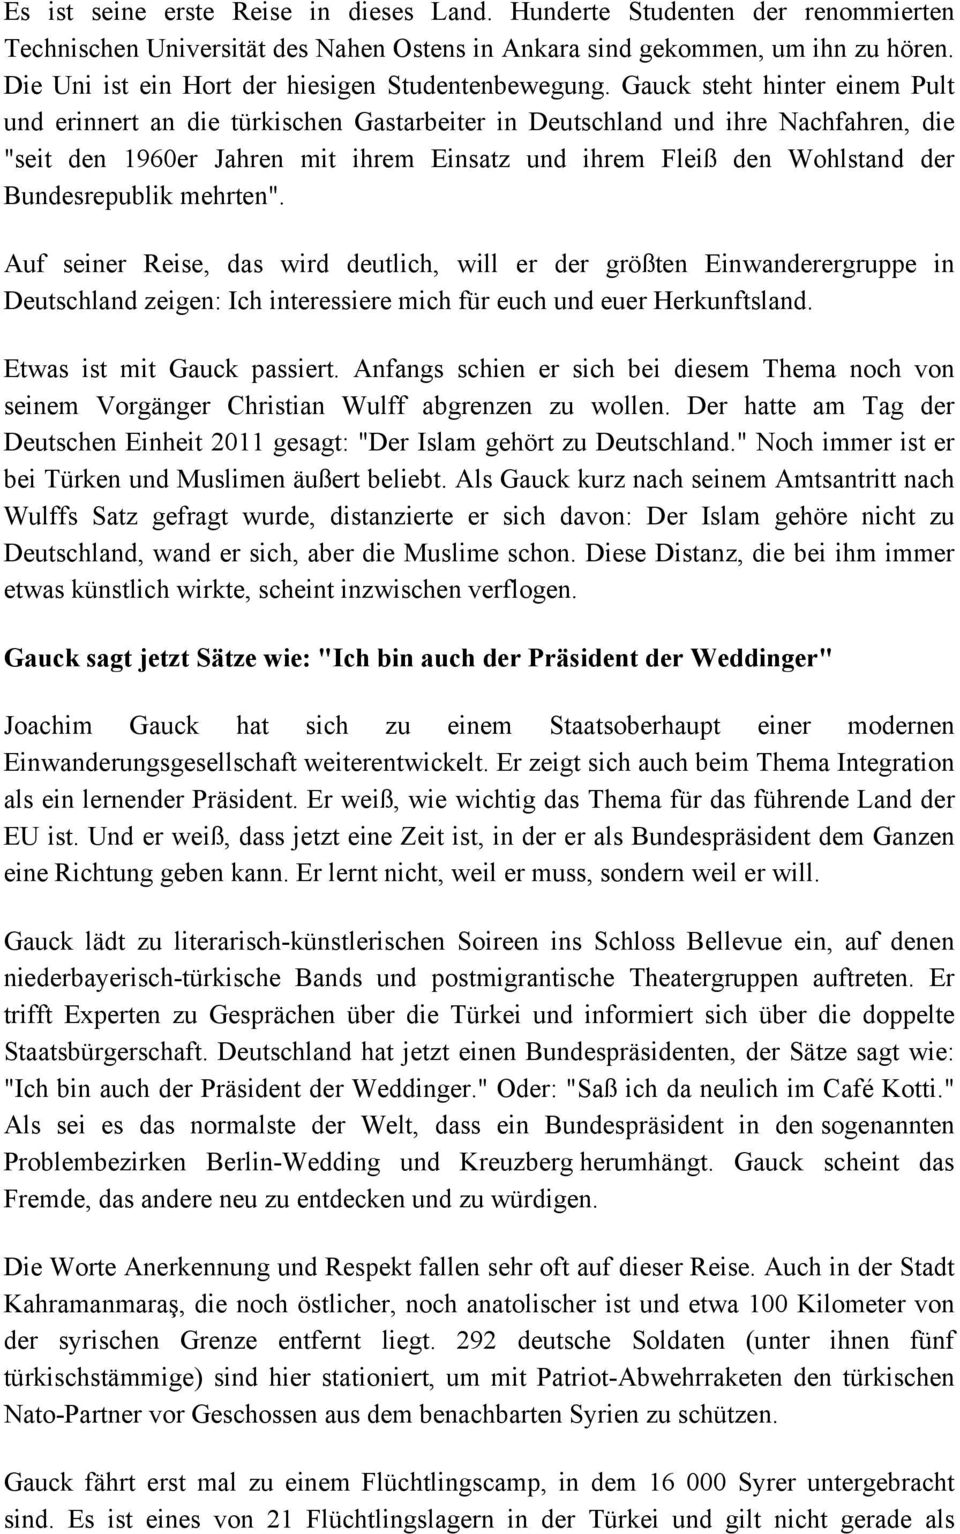 Gauck steht hinter einem Pult und erinnert an die türkischen Gastarbeiter in Deutschland und ihre Nachfahren, die "seit den 1960er Jahren mit ihrem Einsatz und ihrem Fleiß den Wohlstand der